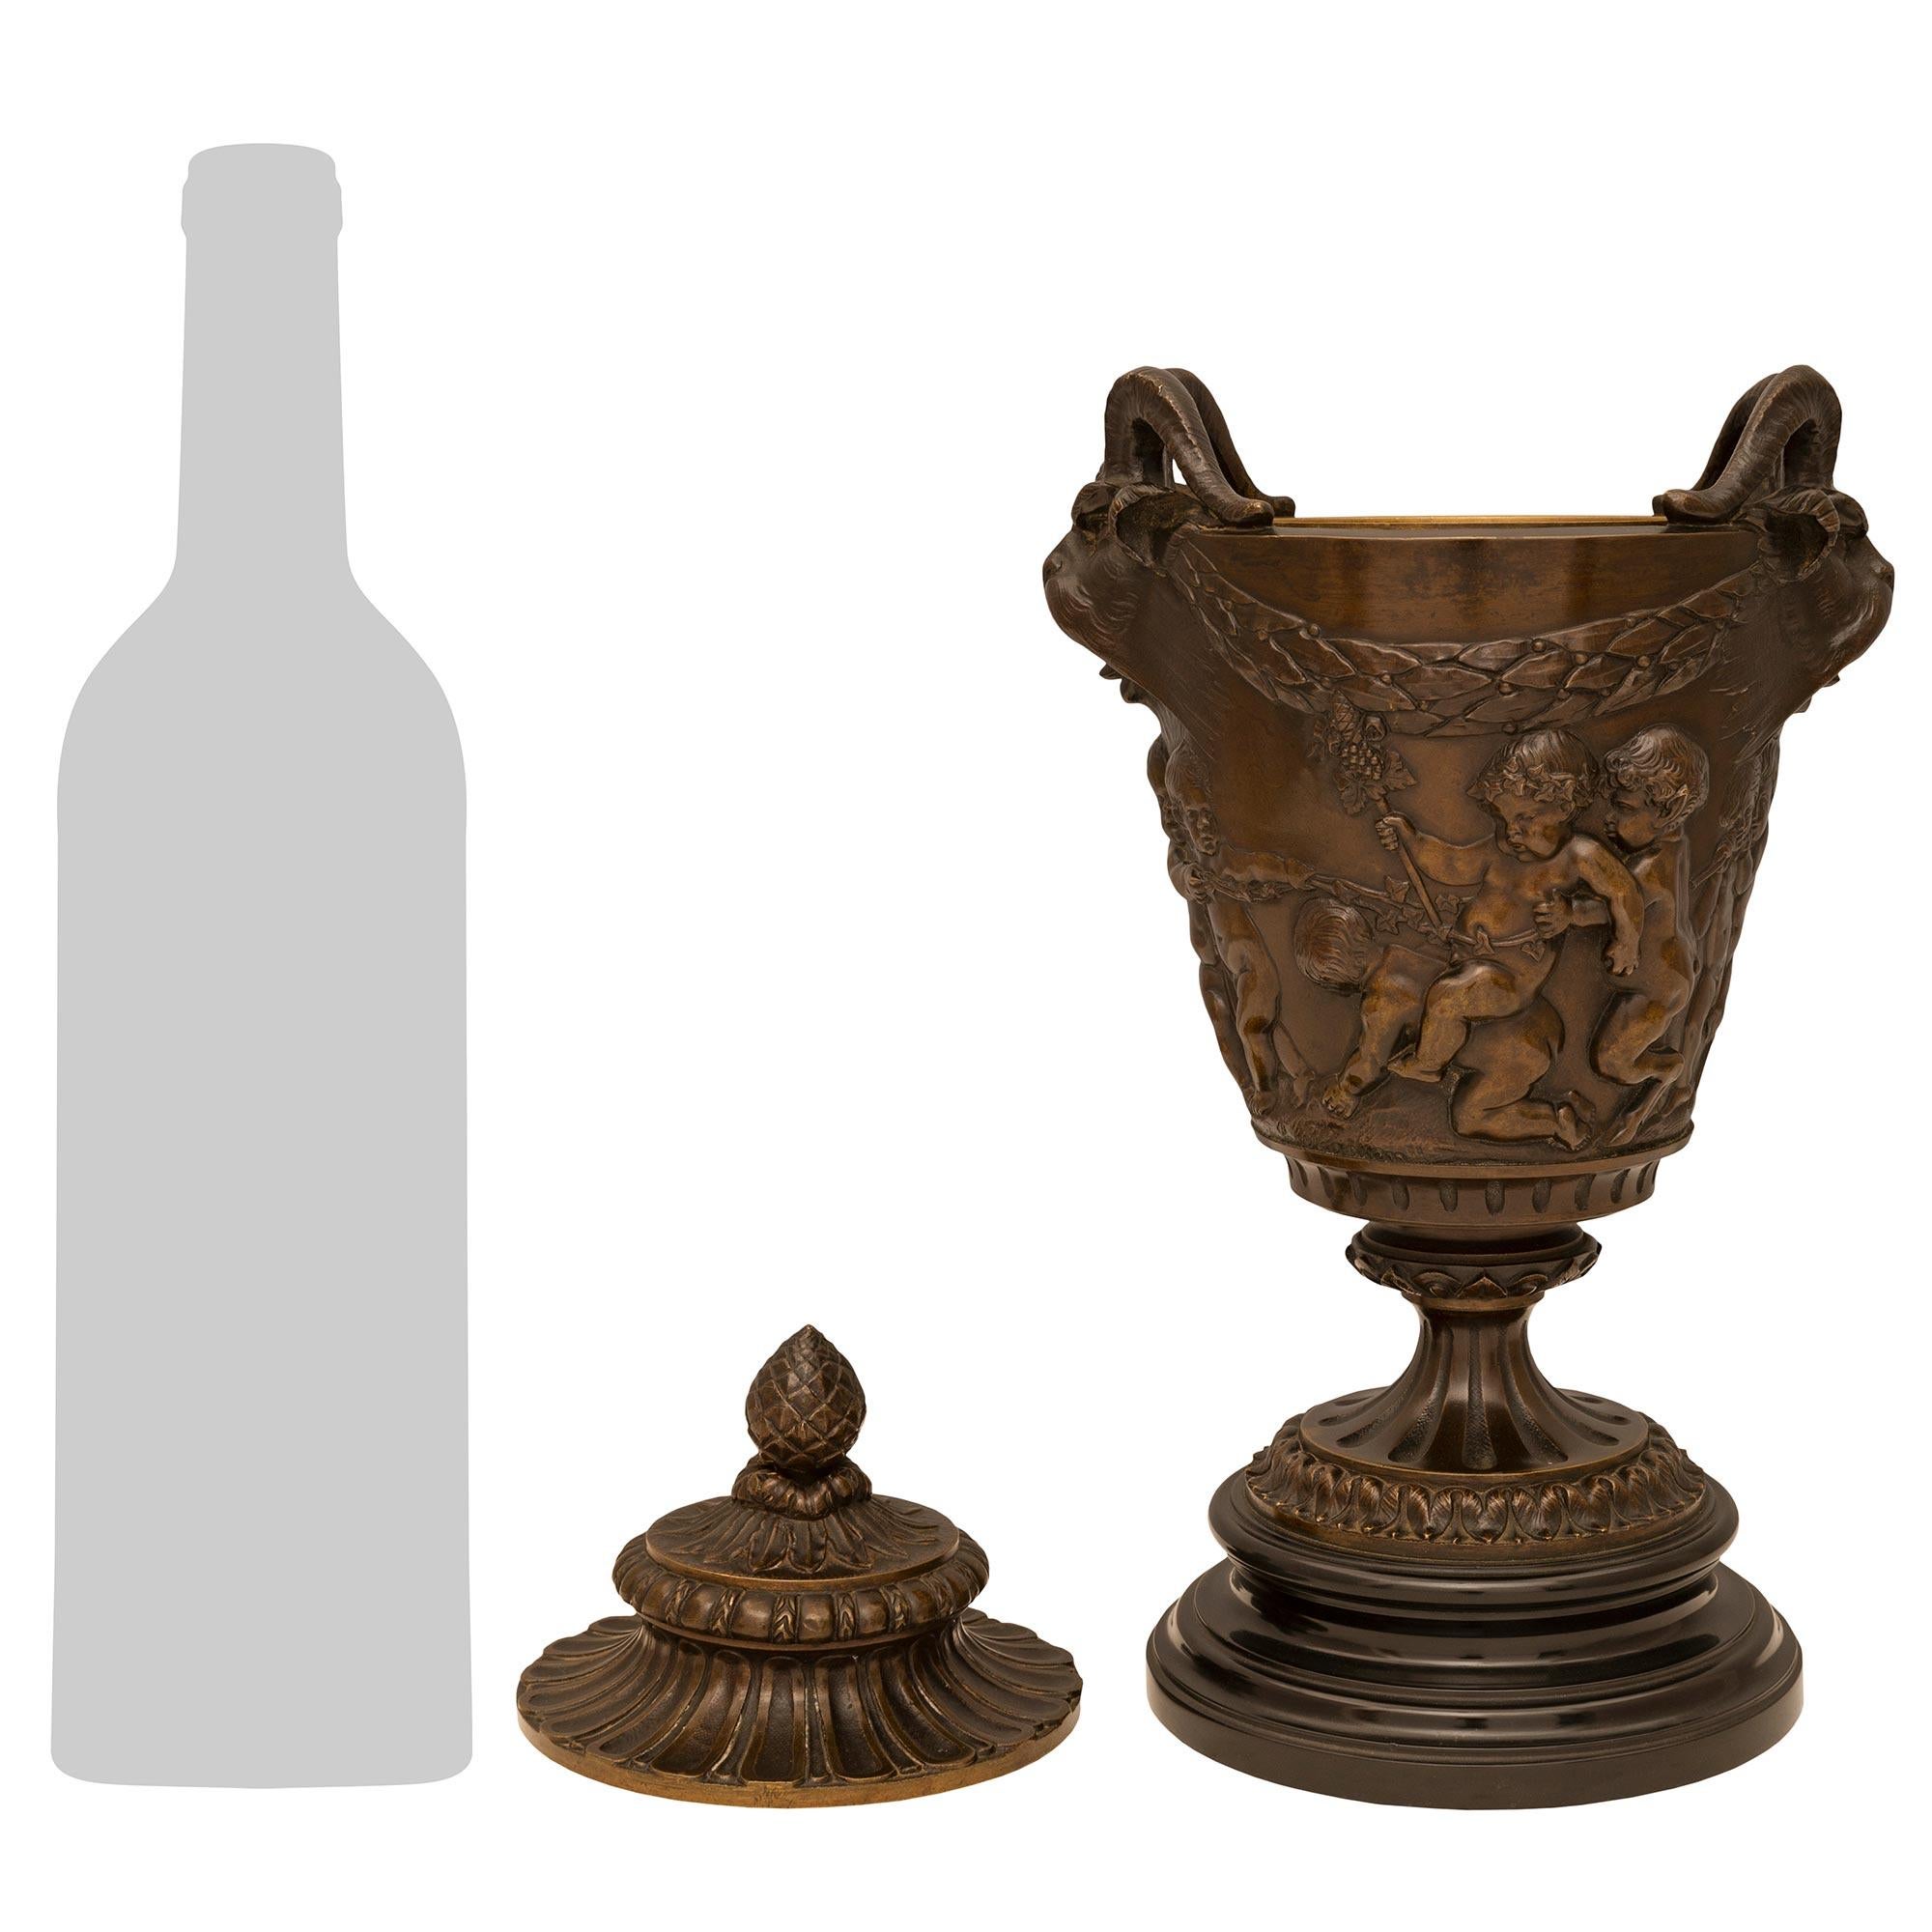 Charmante paire d'urnes en bronze patiné et marbre noir belge de style Louis XVI du XIXe siècle, signées Clodion et attribuées à Barbedienne. Chaque urne est surmontée d'une belle base circulaire en marbre noir tacheté de Belgique, sous l'élégant